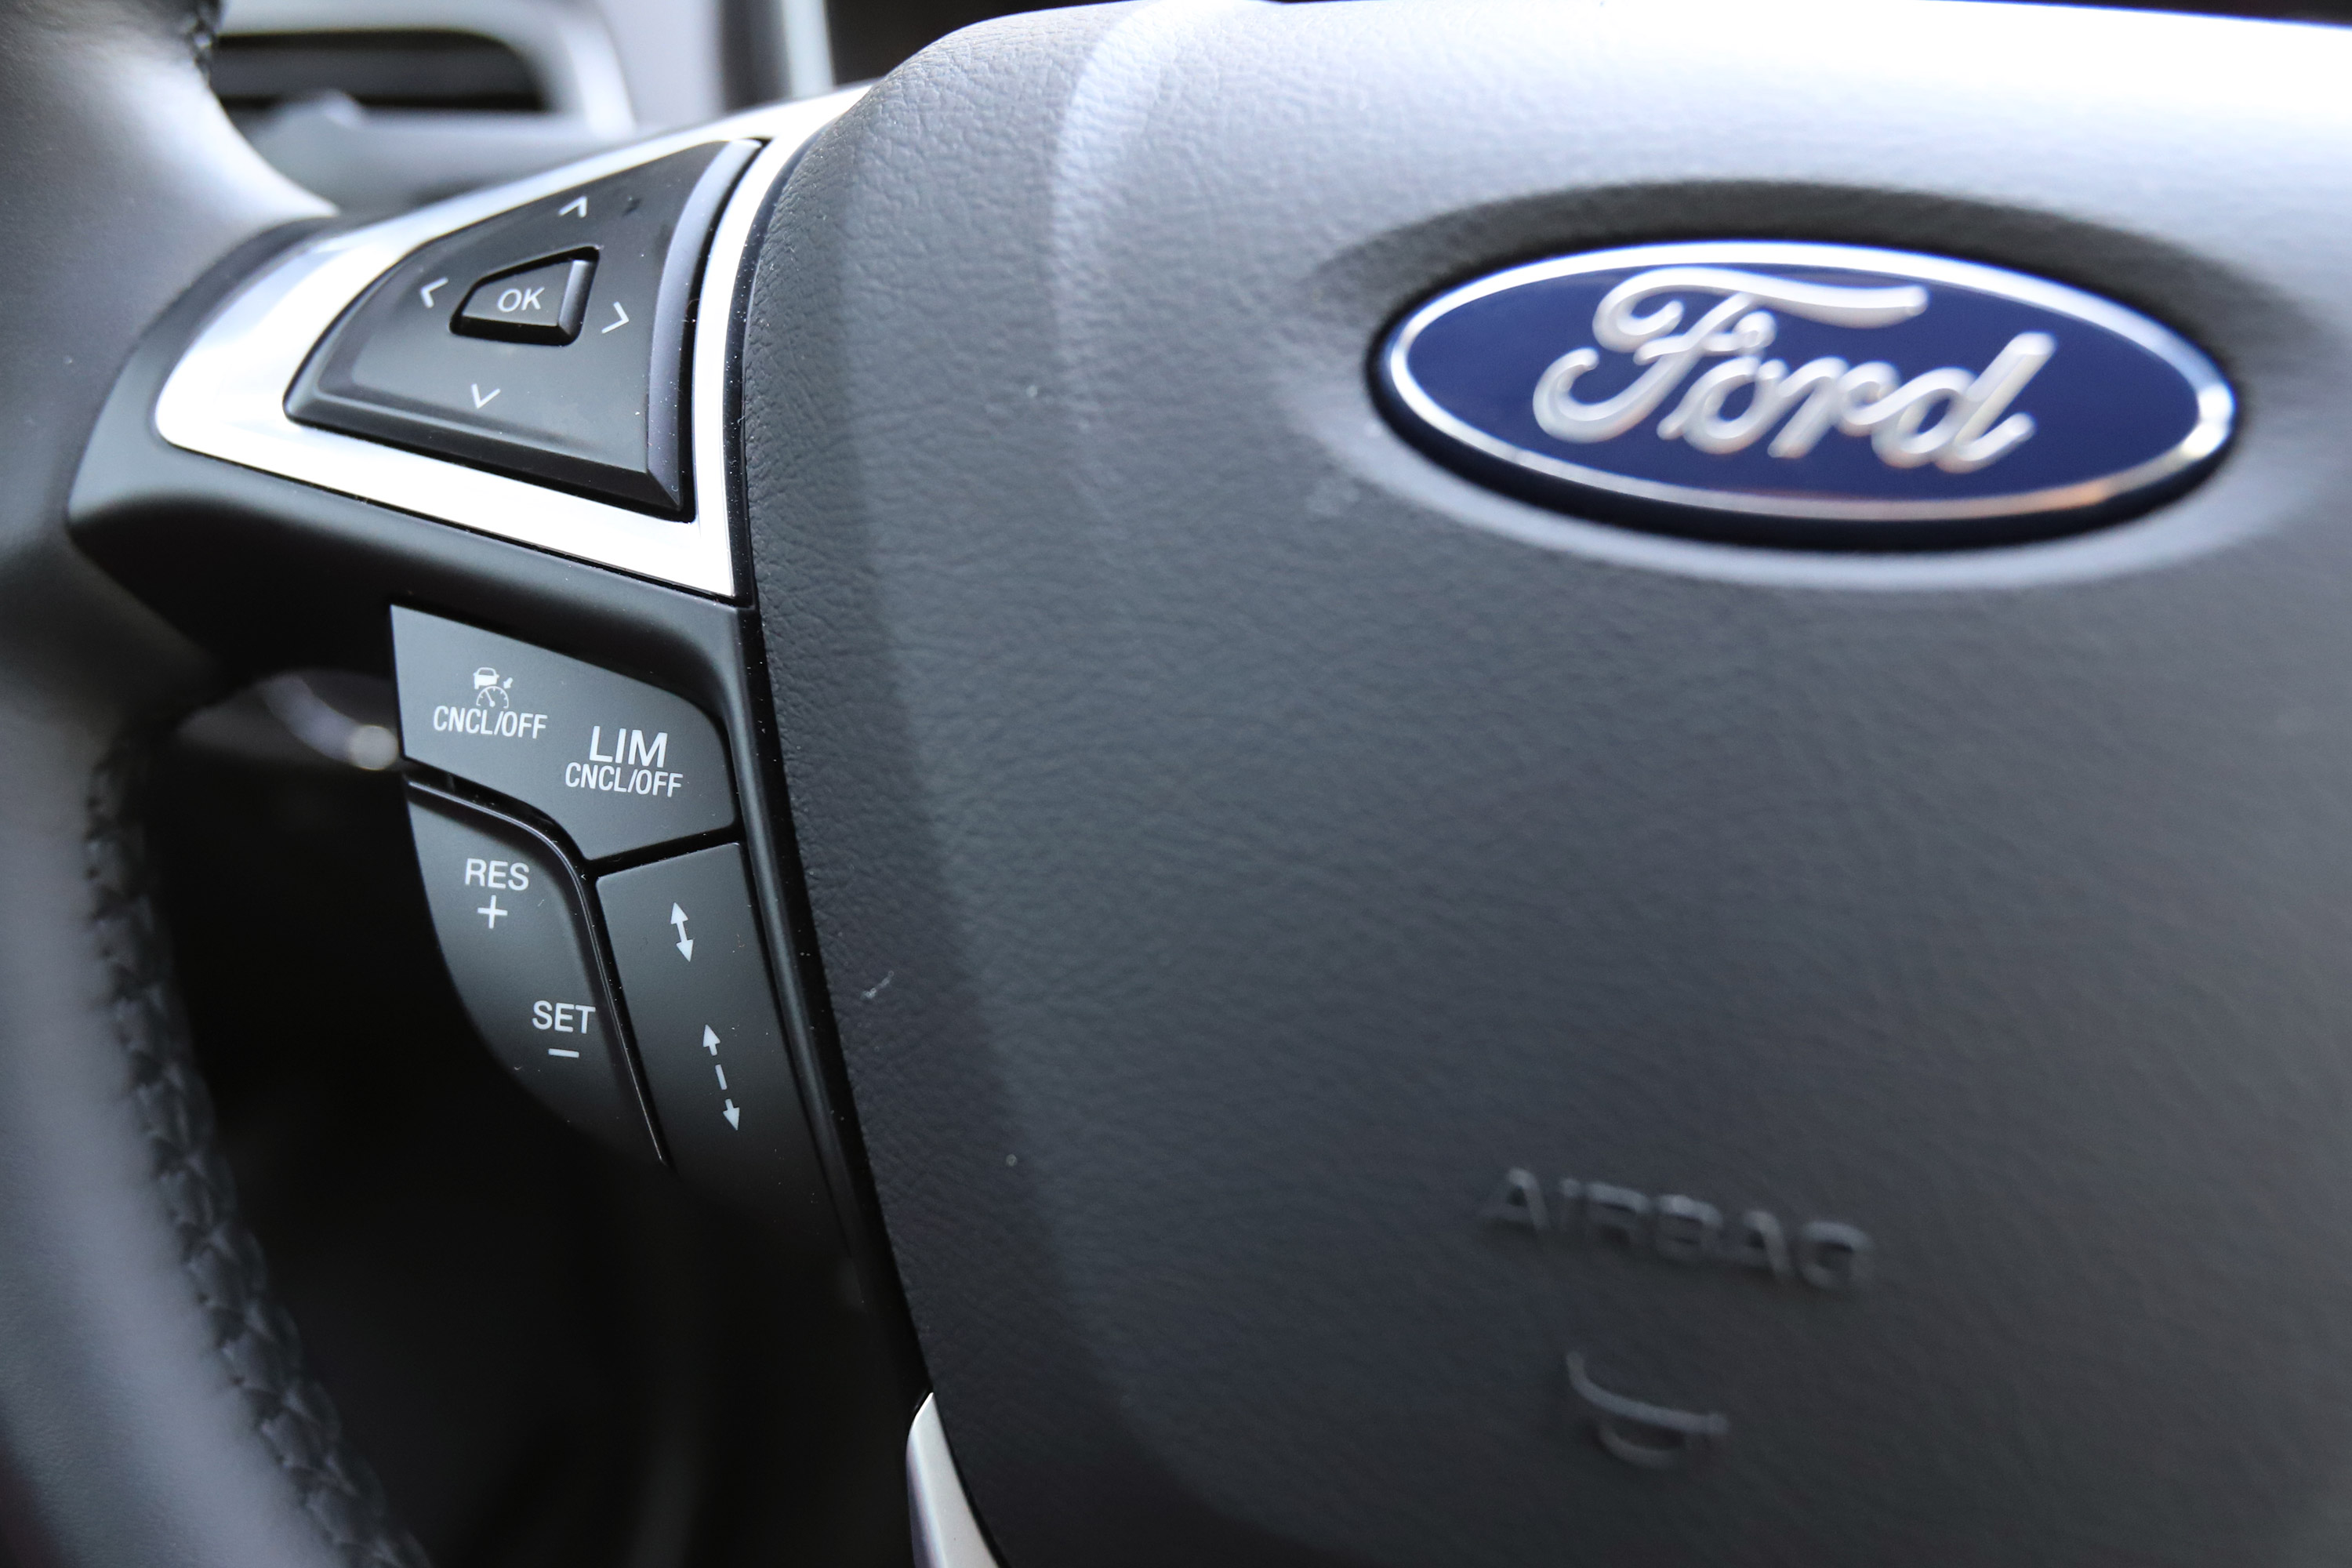 Vajon eljár 5 literrel egy ekkora autó?  – Ford Mondeo hibrid teszt 38